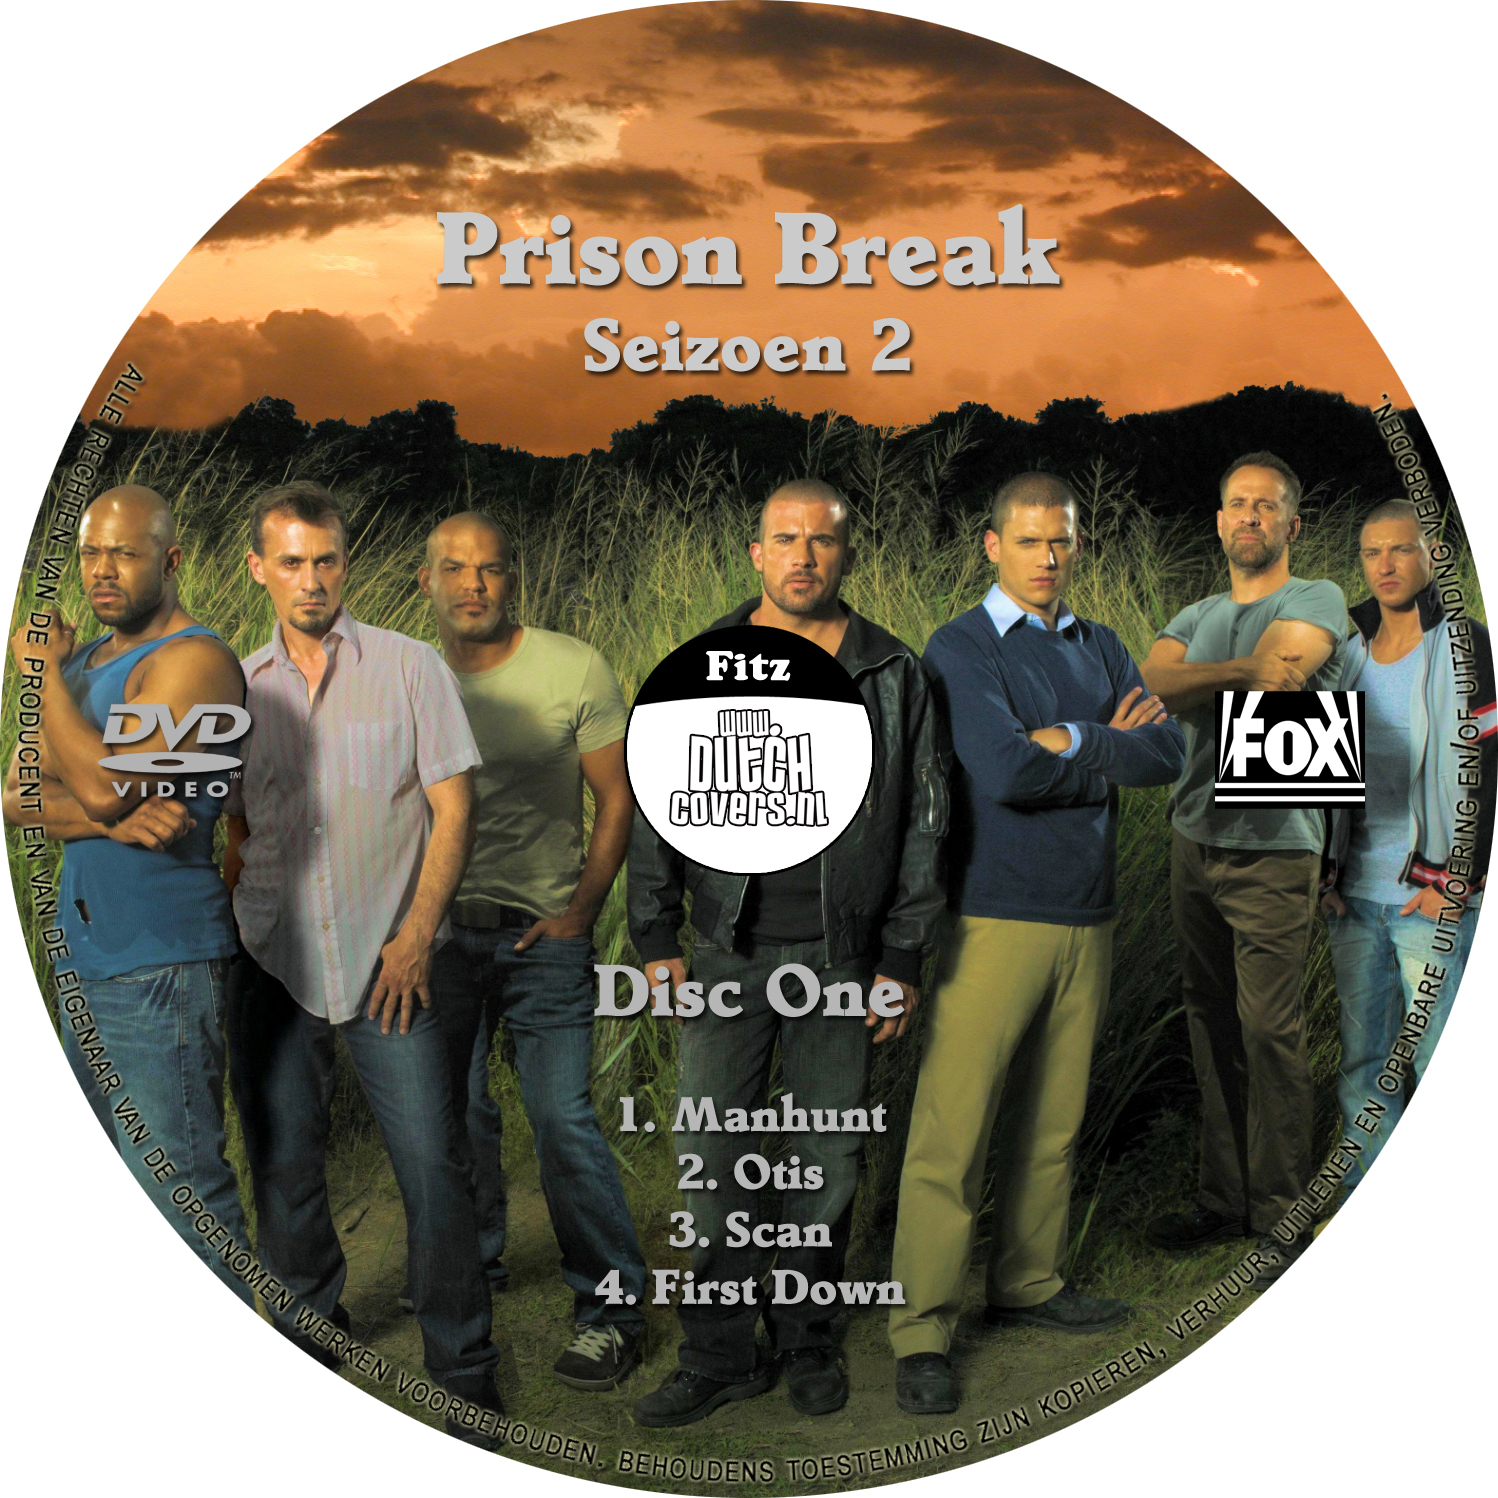 Prison Break Seizoen 2 disc 1